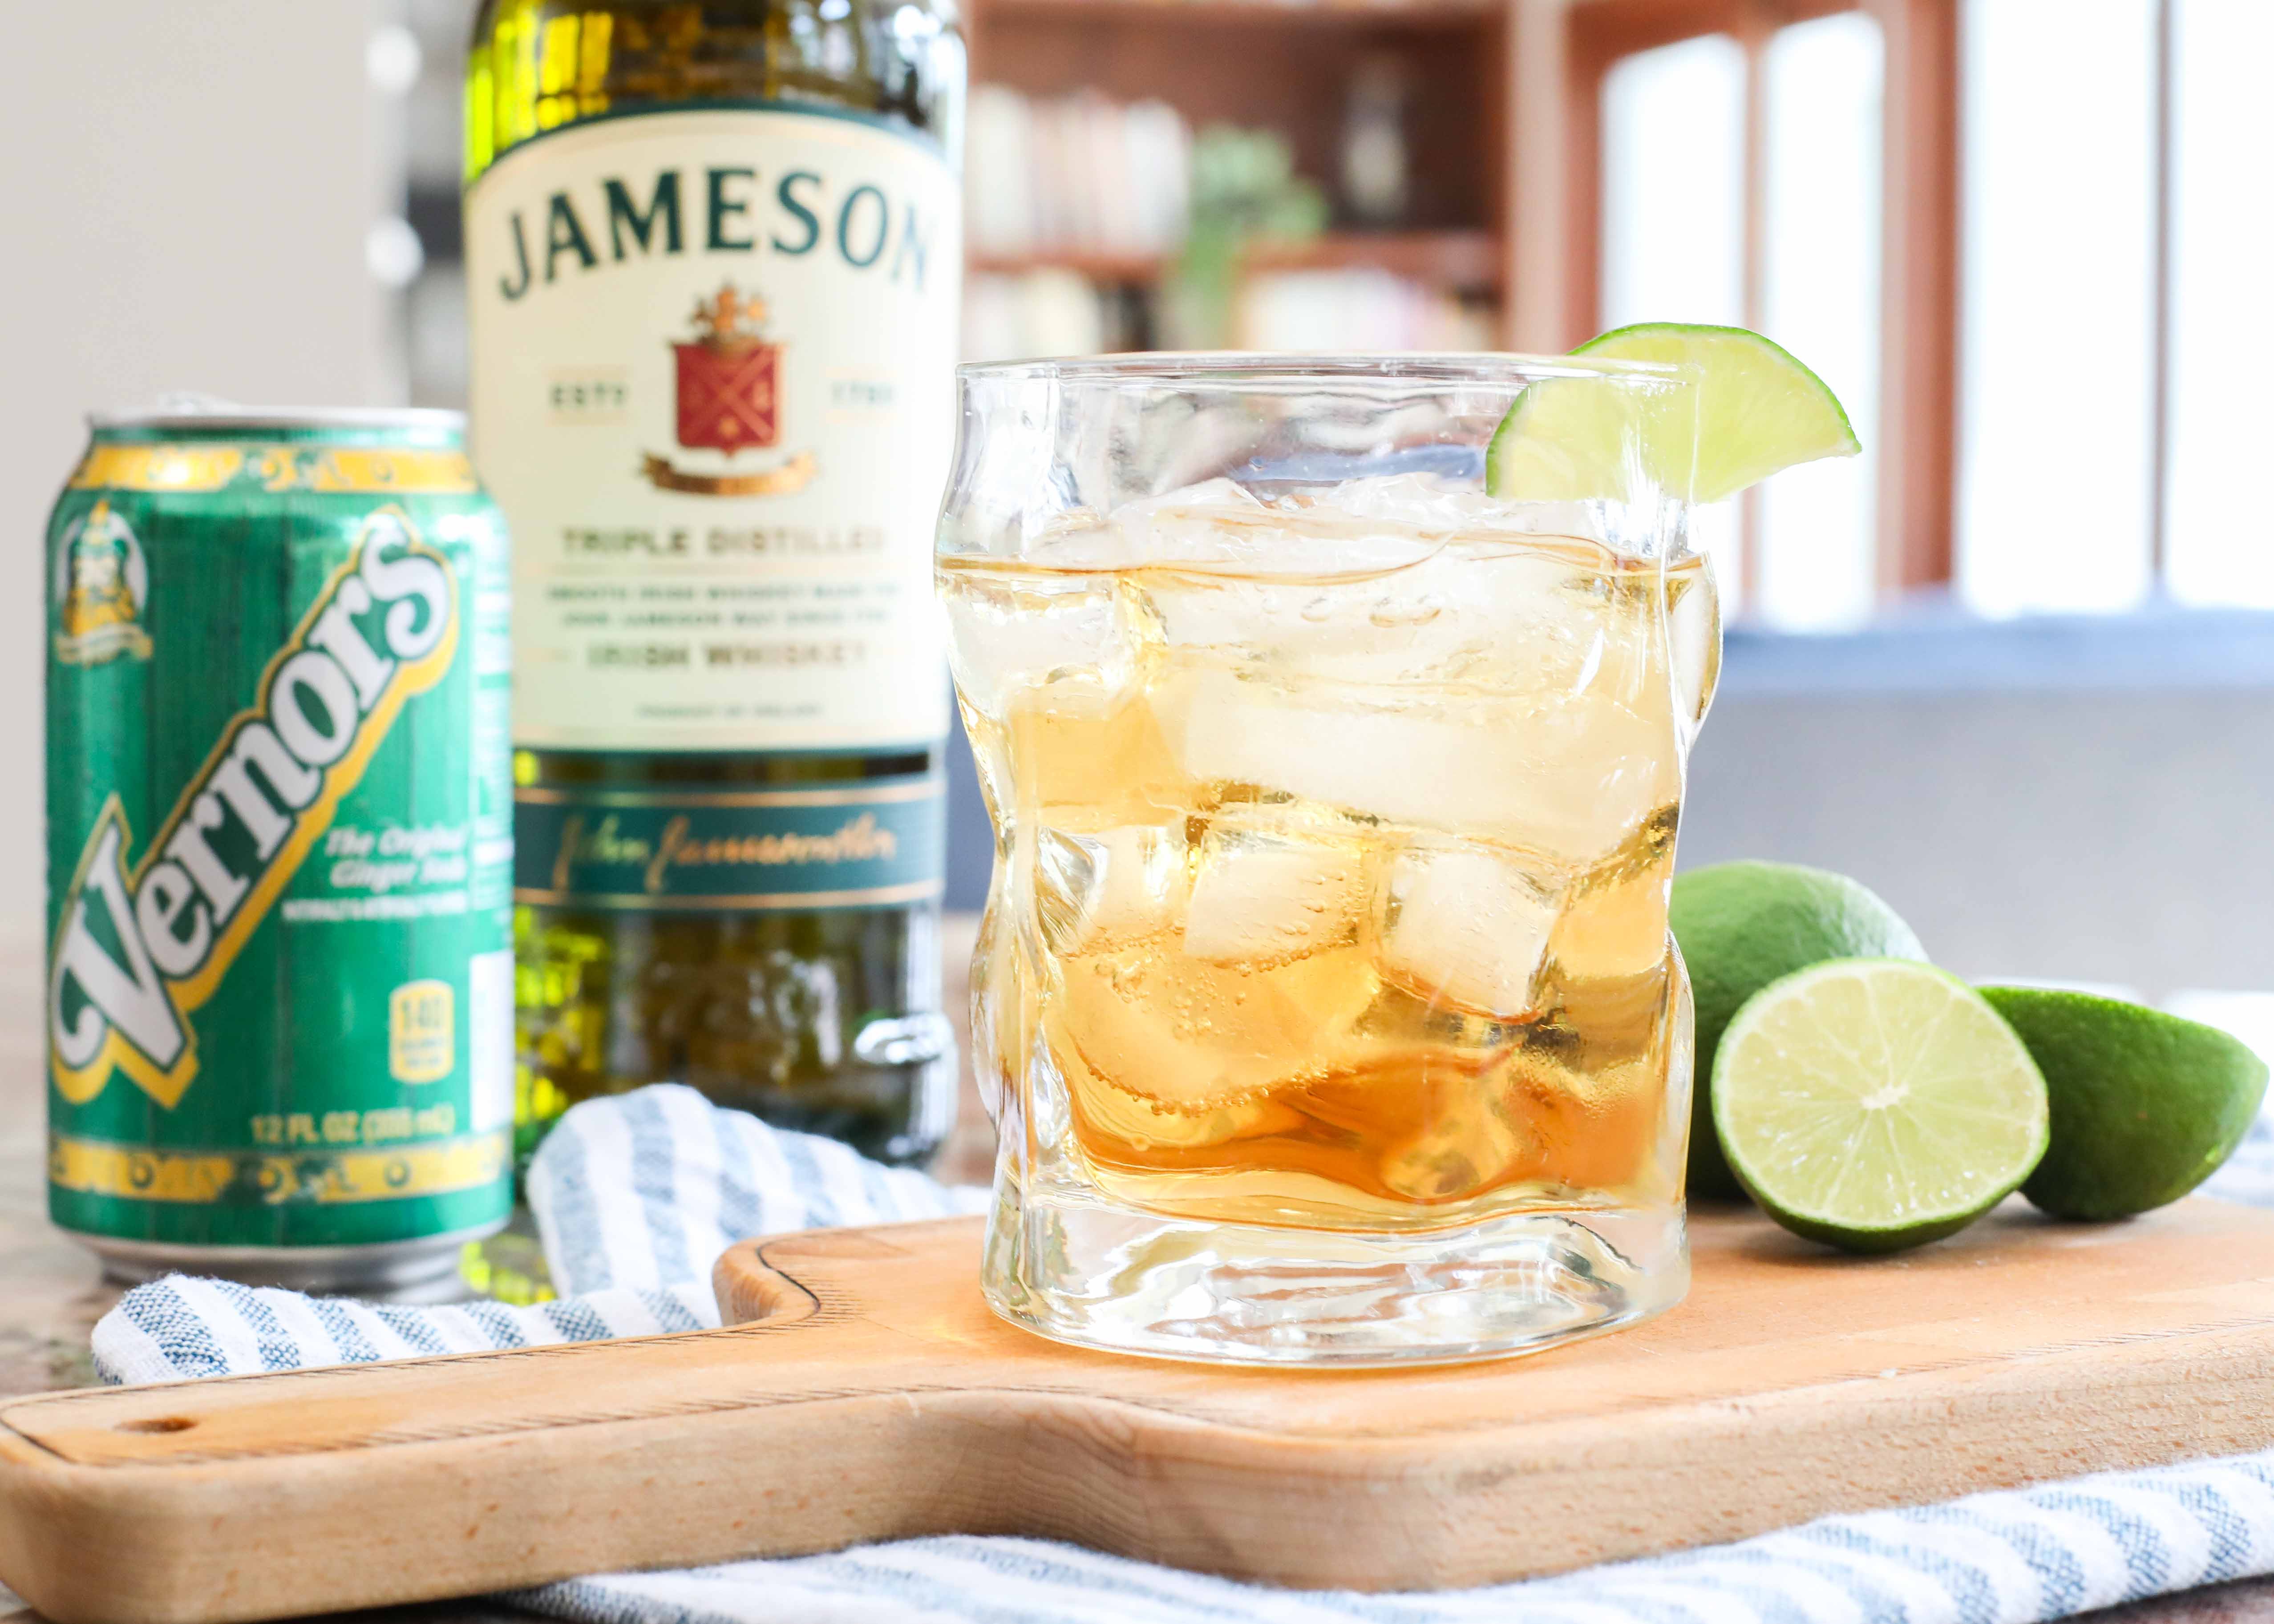 Jameson, Ginger & Lime Recipe